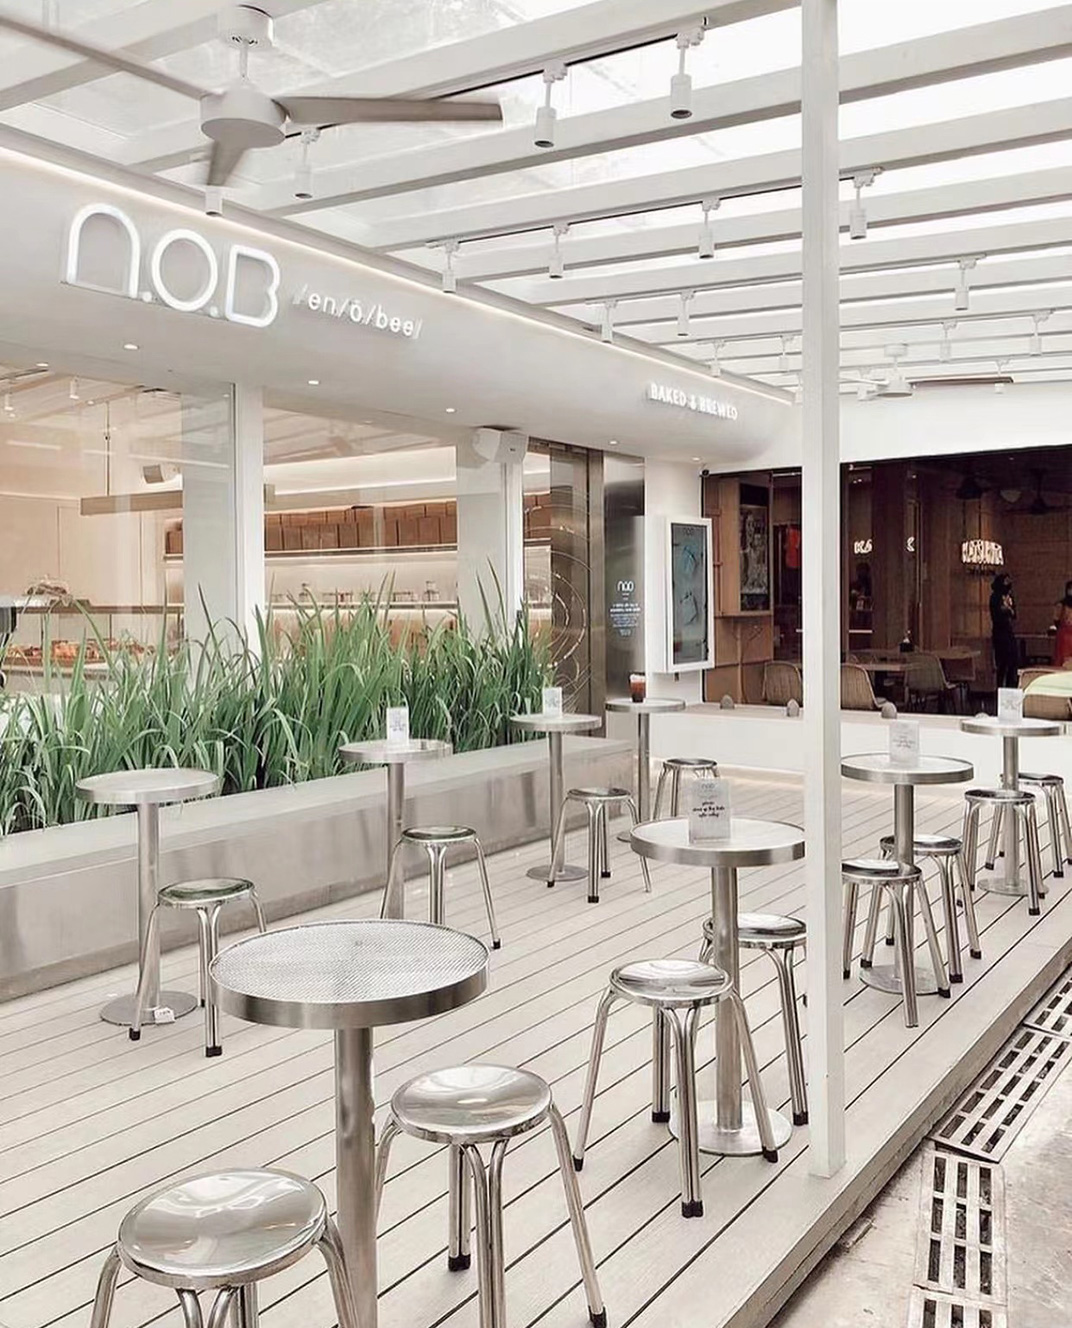 干净整洁的面包店咖啡店空间 印度尼西亚 上海 面包店 咖啡店 不锈钢 金属网 logo设计 vi设计 空间设计